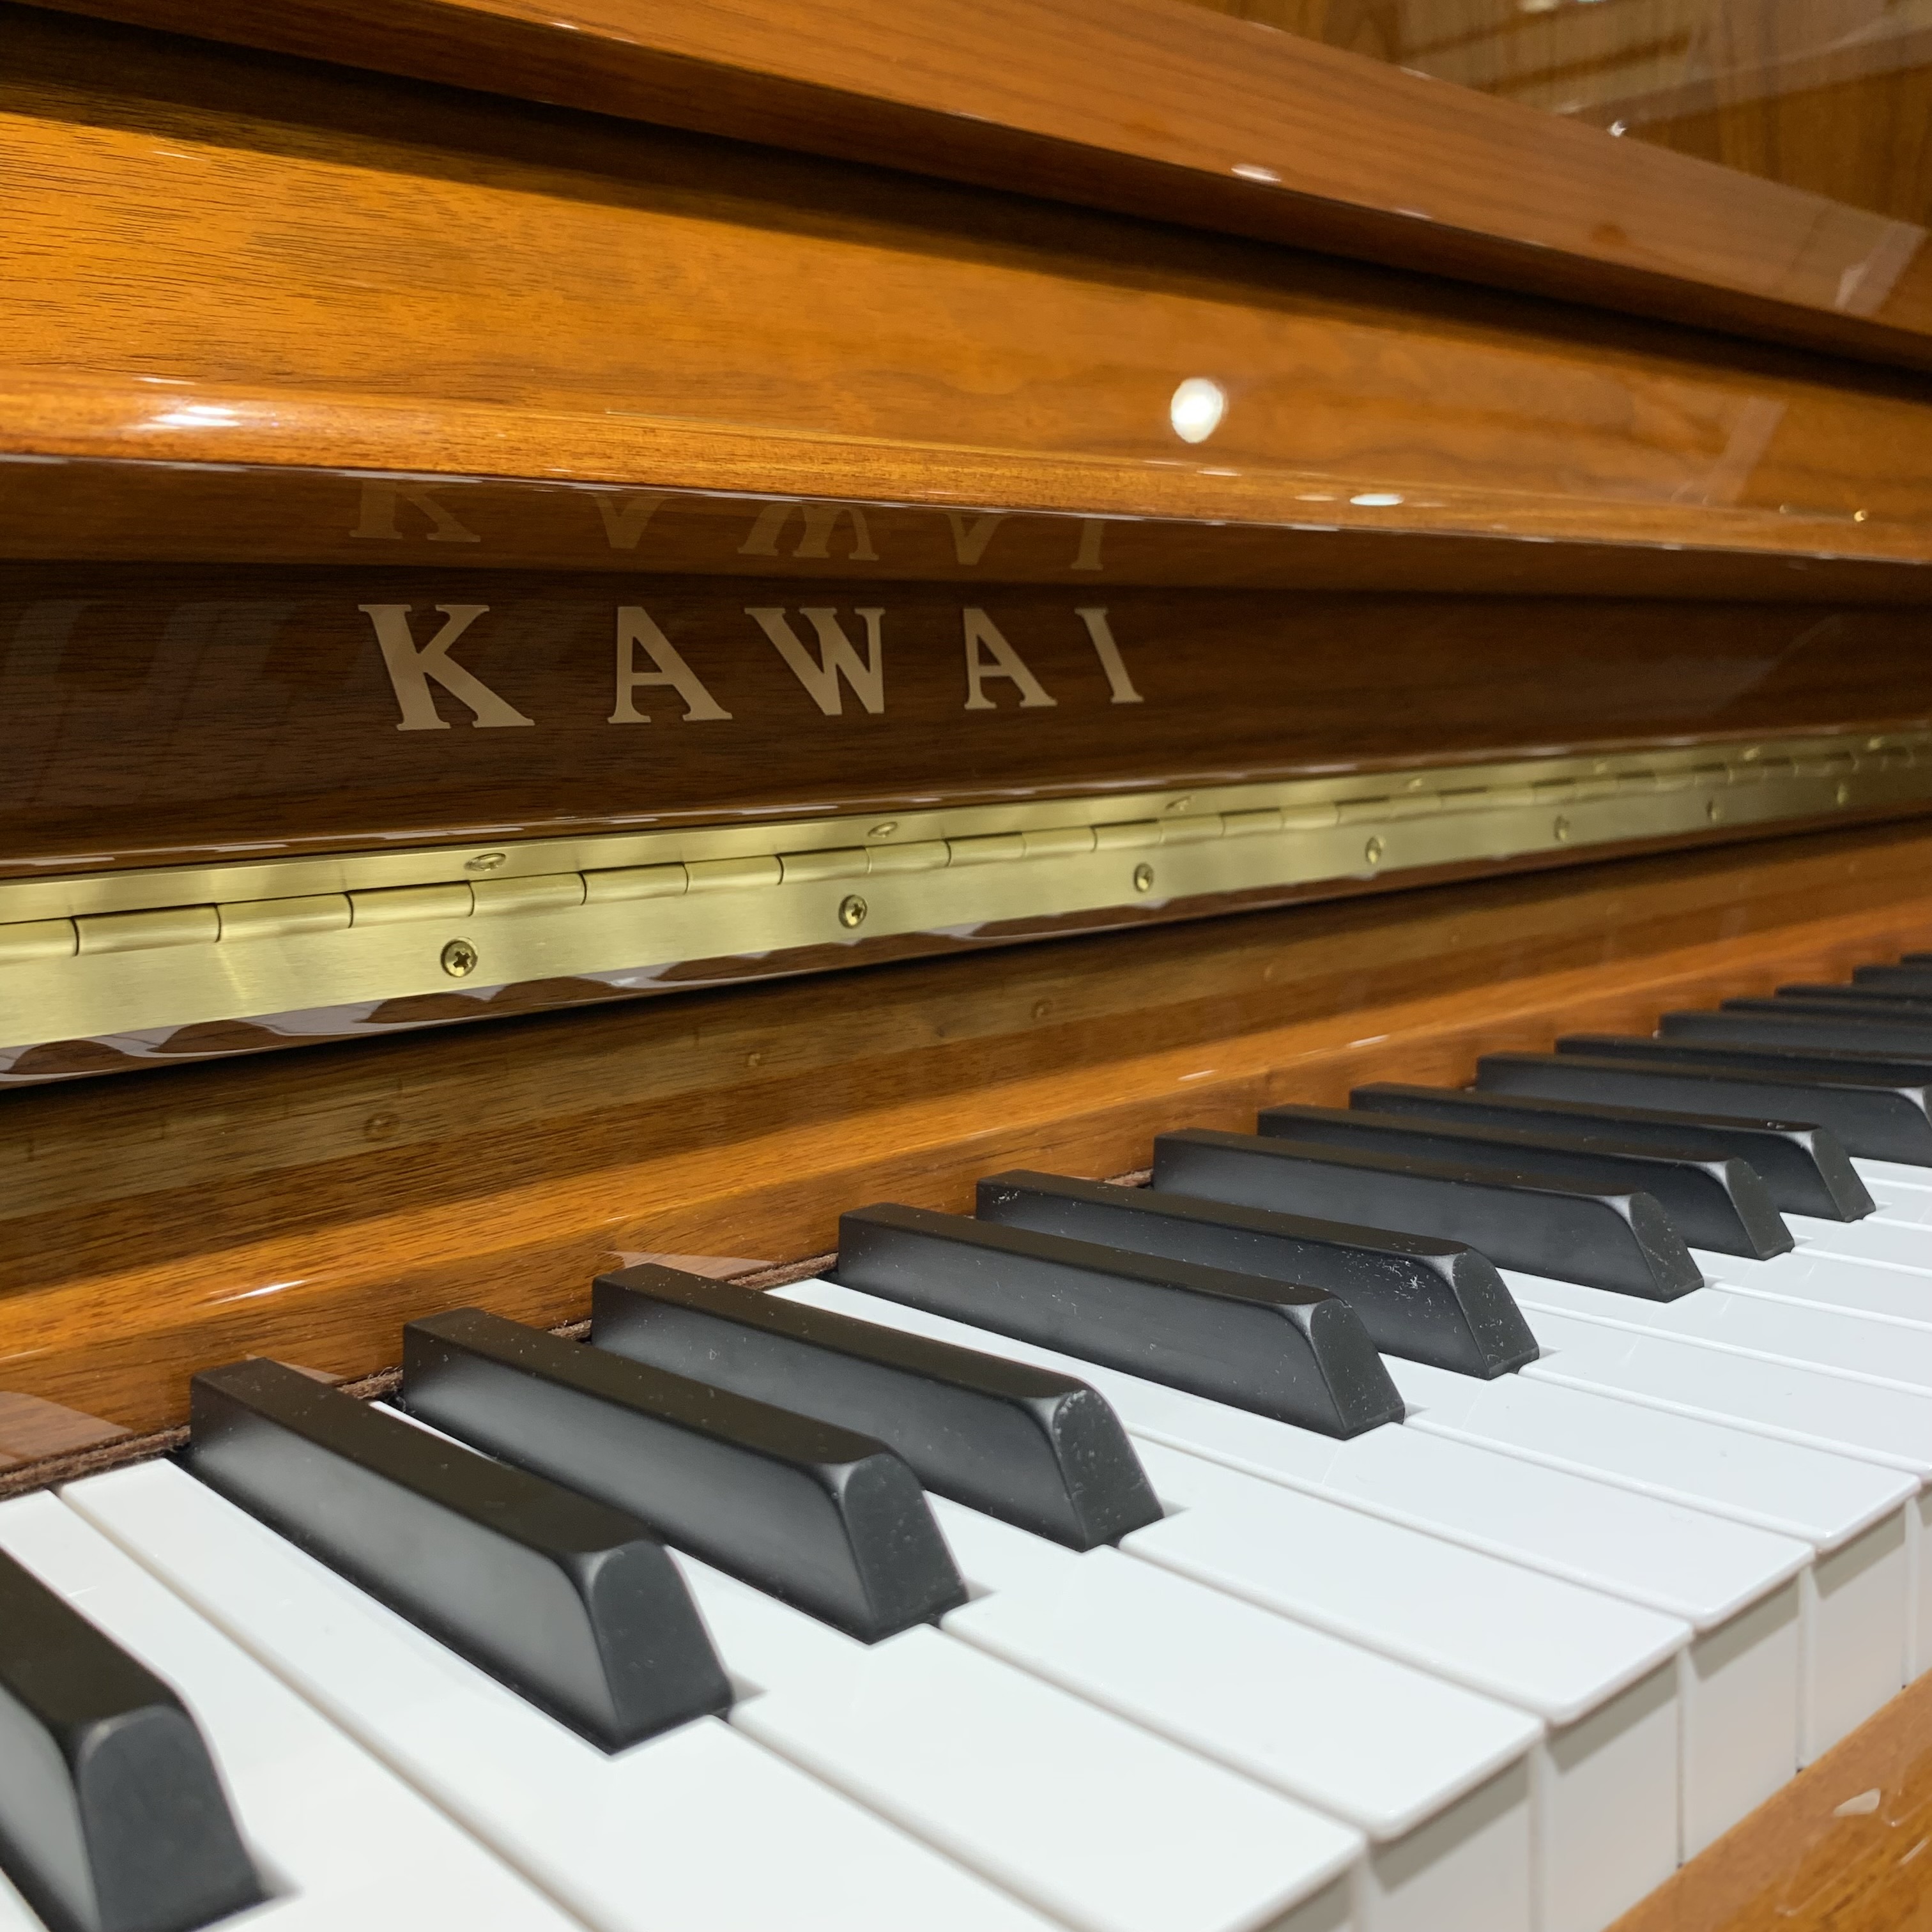 |*品番|KAWAI K-300SF| |*販売]]価格|￥980,000(税抜)| |*詳細|K-300をベースにしたワンランク上のモデル。華やかさと深みを併せ持った音色のピアノです。]]高さ122cm×幅149cm×奥行61cm 227kg| [https://info.shimamura.co […]